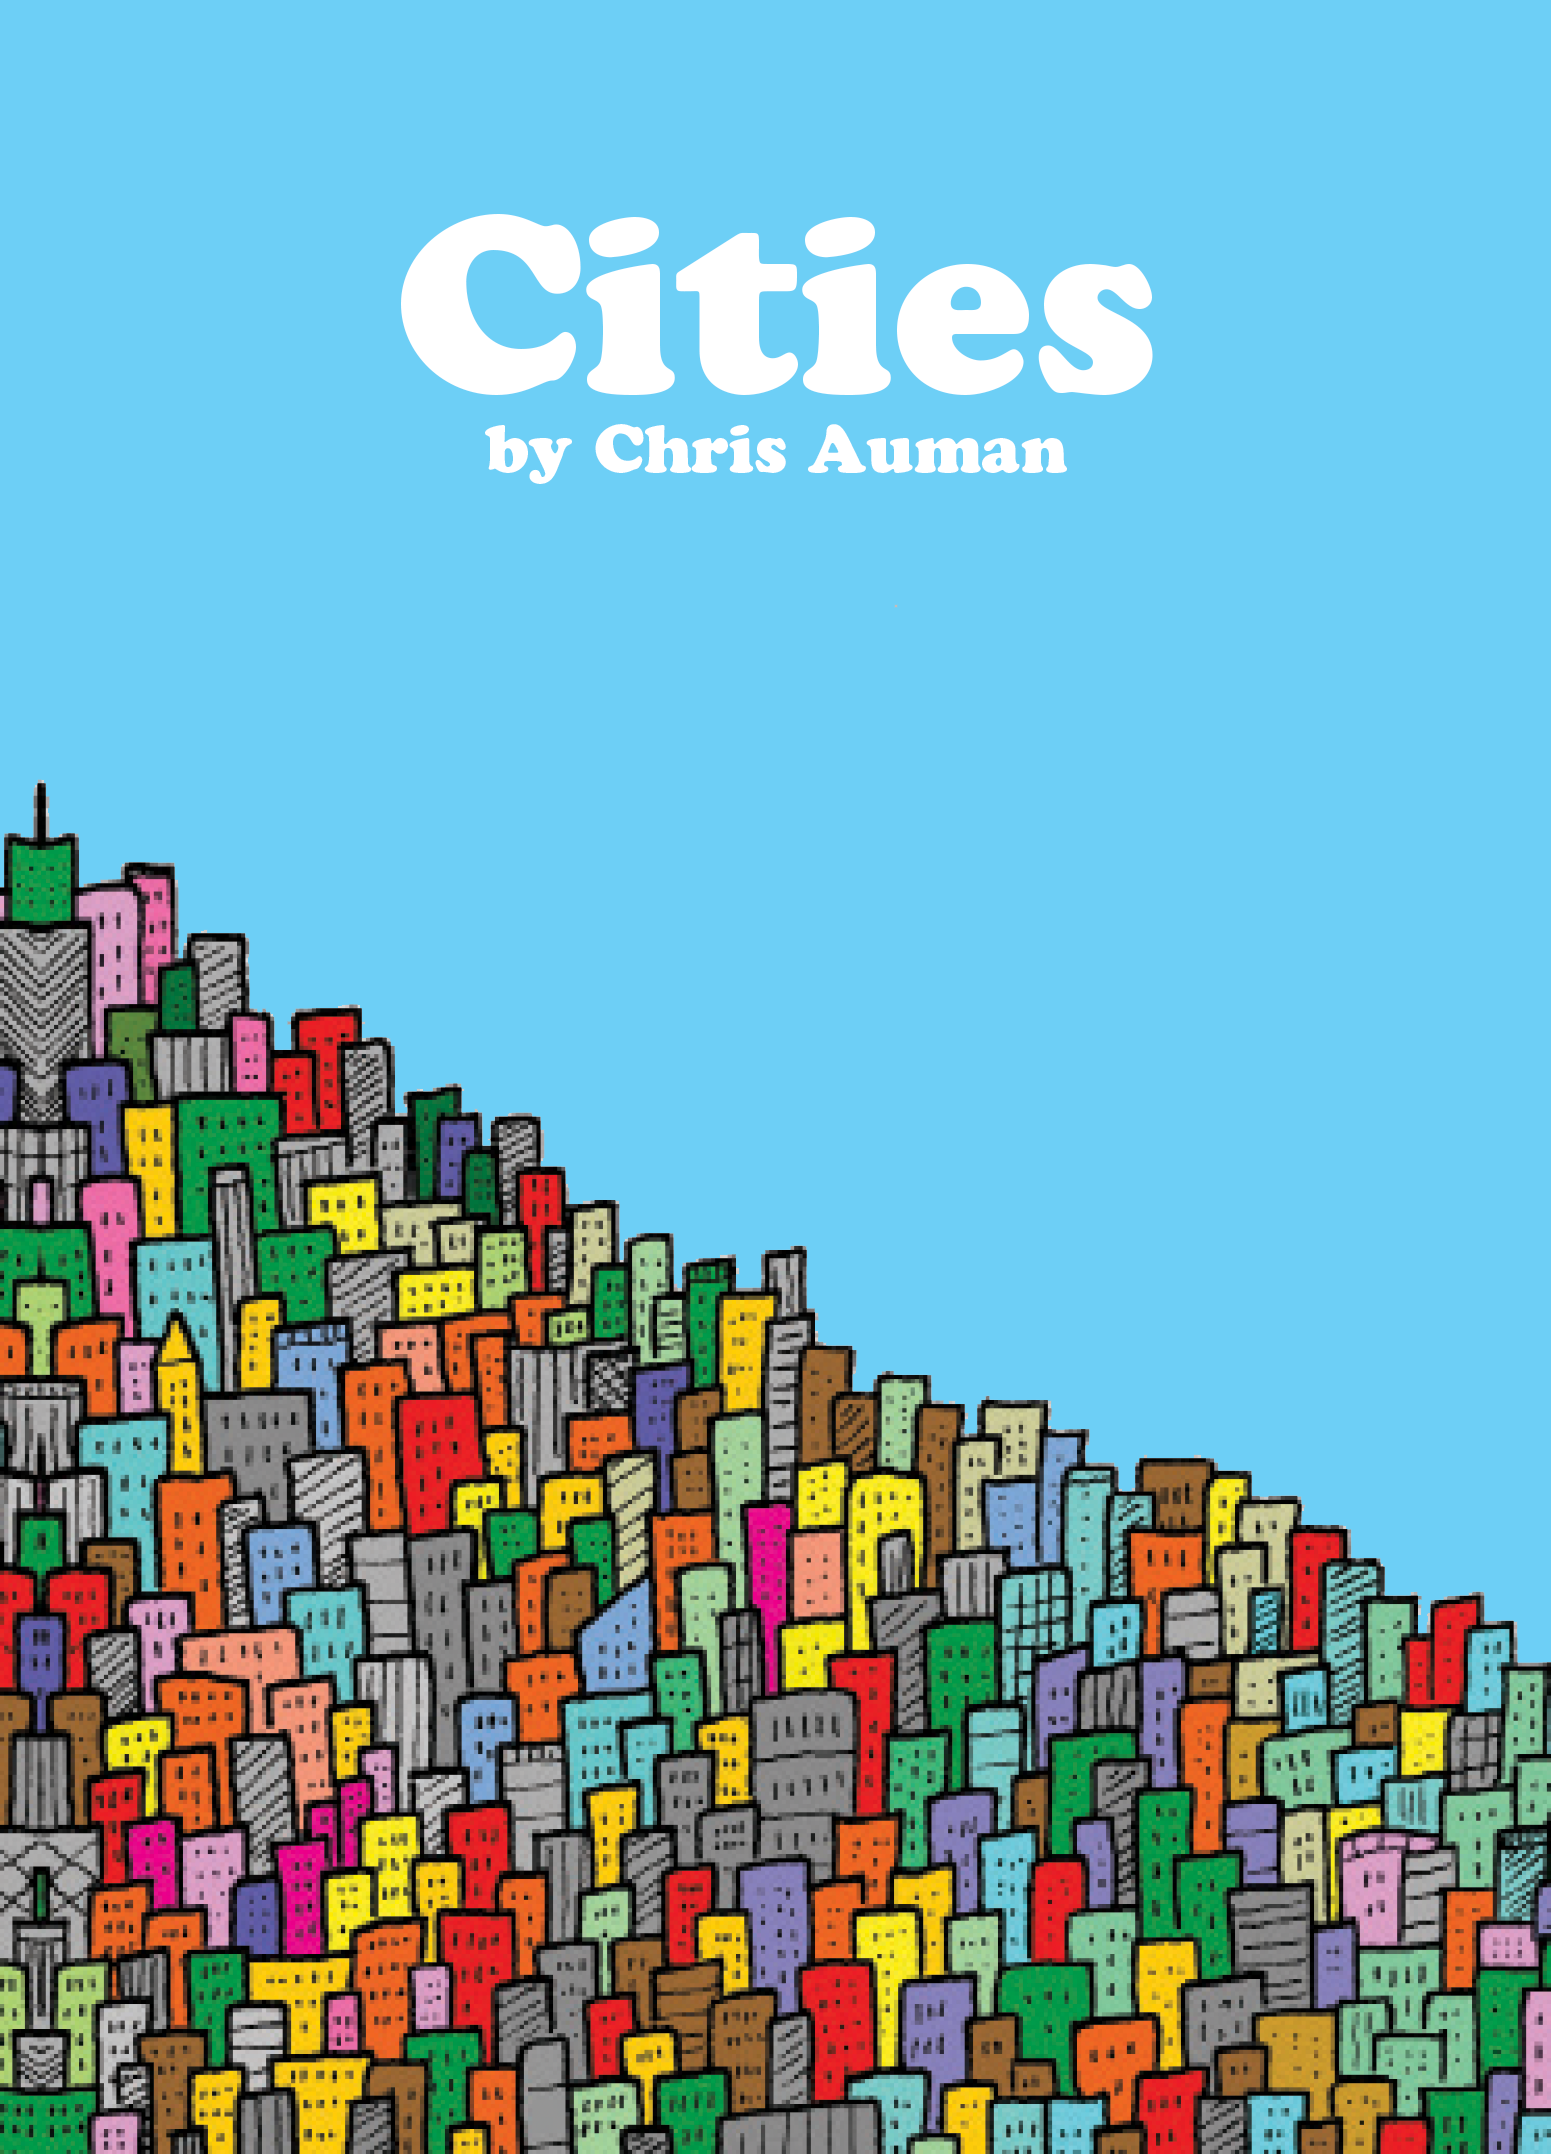 Cities art book by Chris Auman